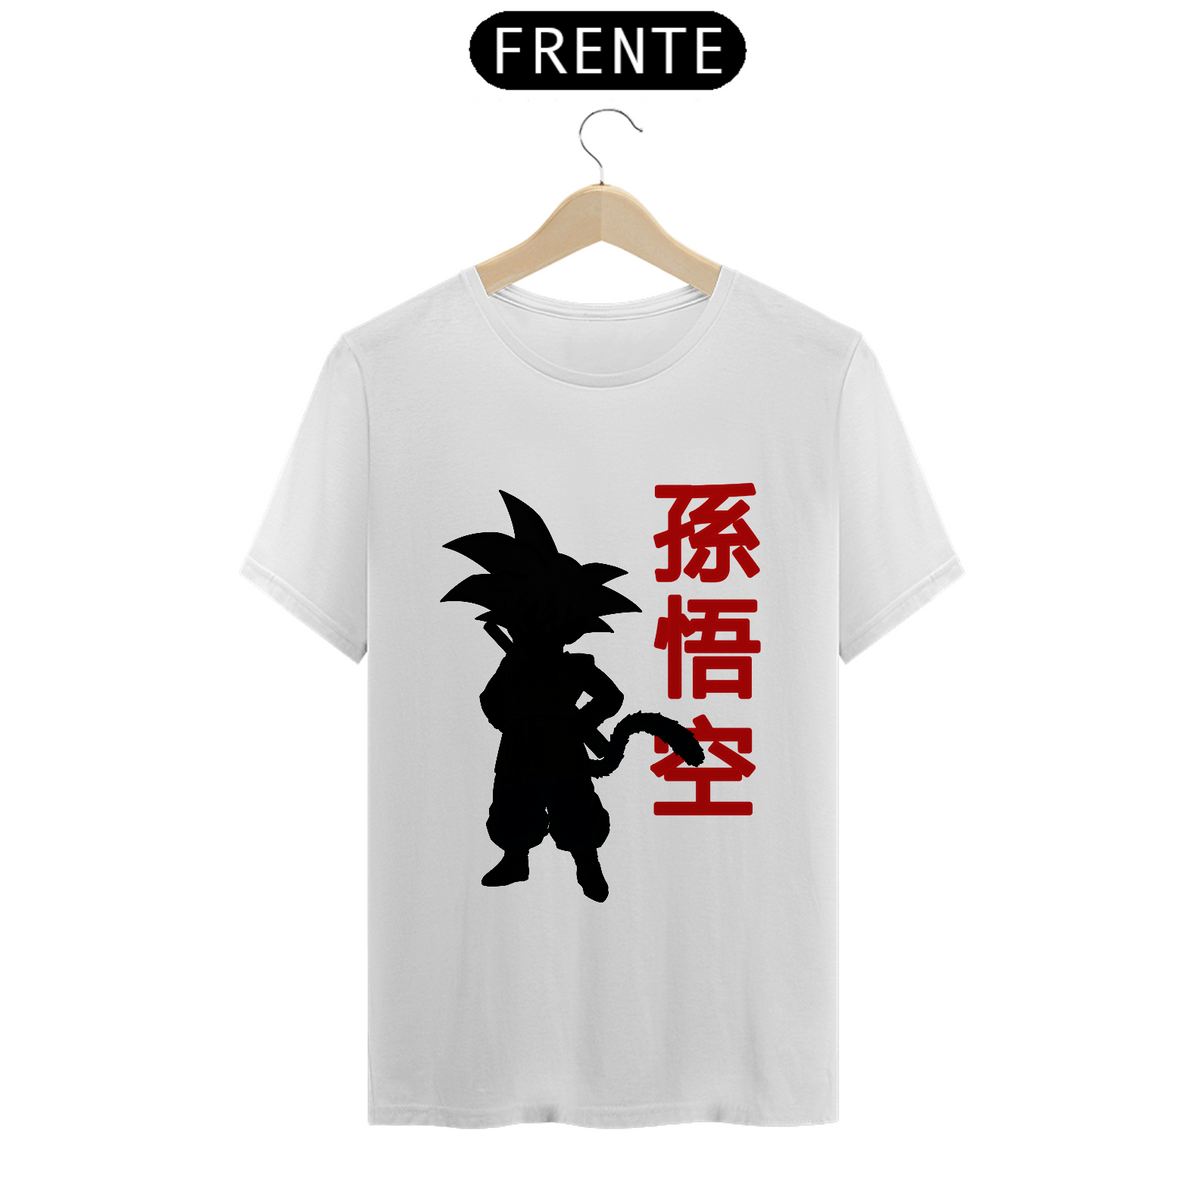 Nome do produto: Camisa Son Goku (Branca)